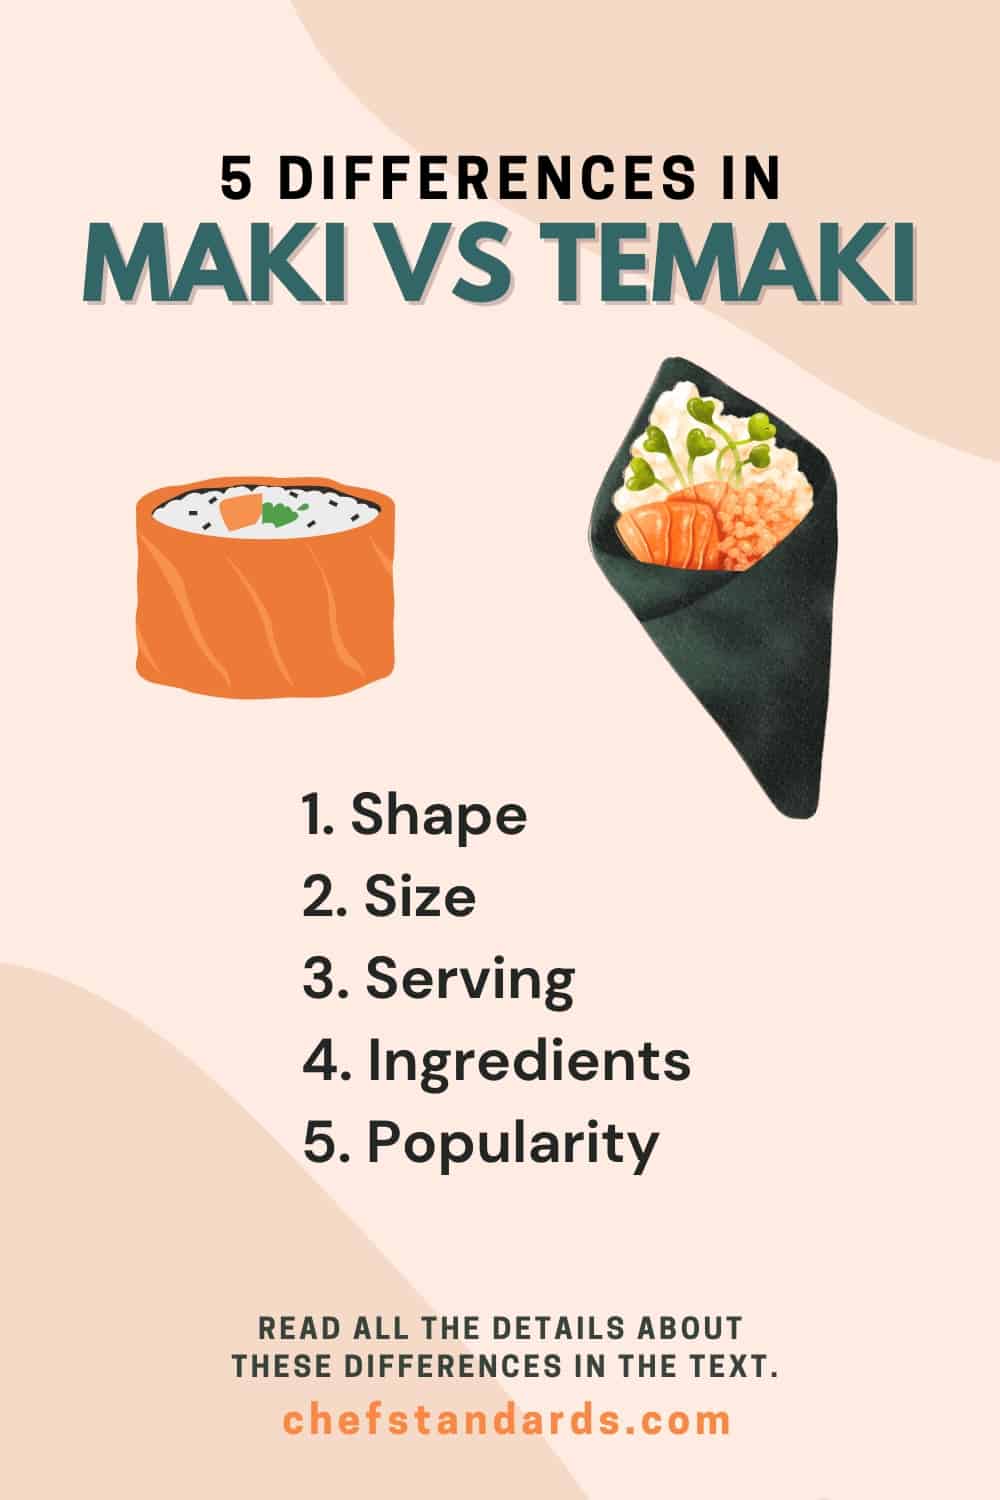 5 differences in maki vs temaki infographic